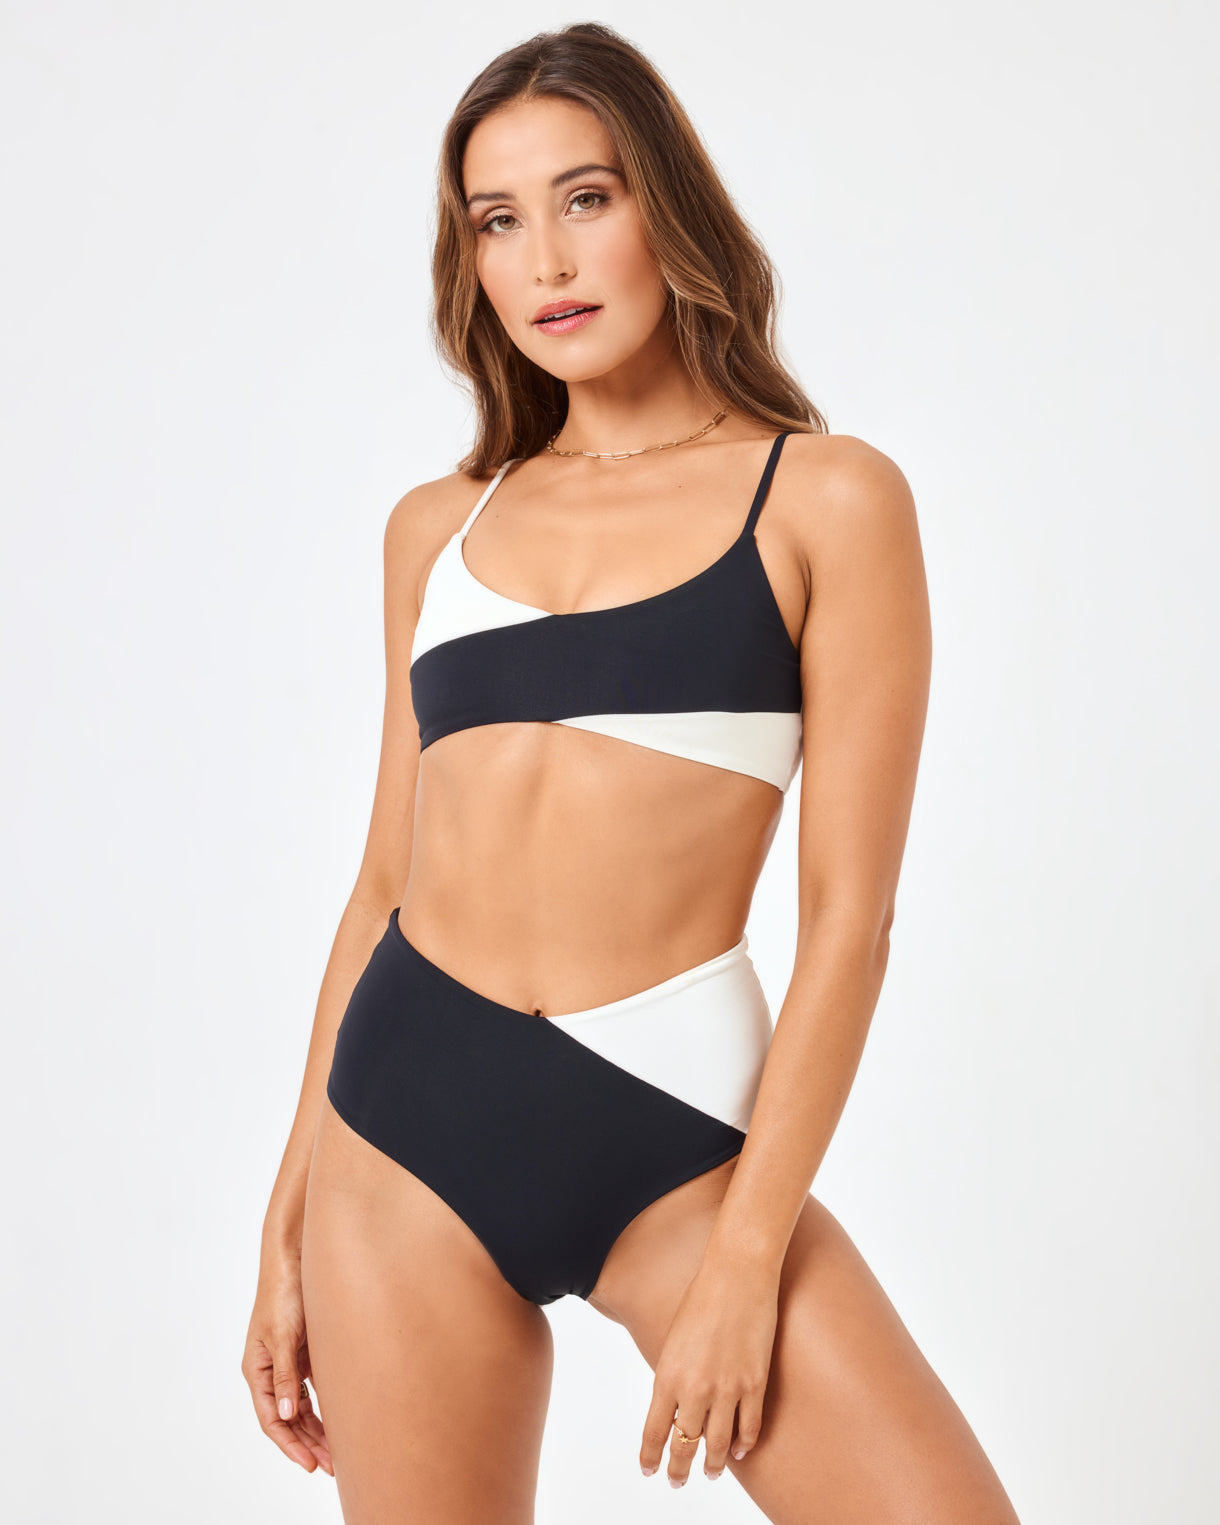 Color Block Bikini Top - White and Black Bikini - Underwire Top